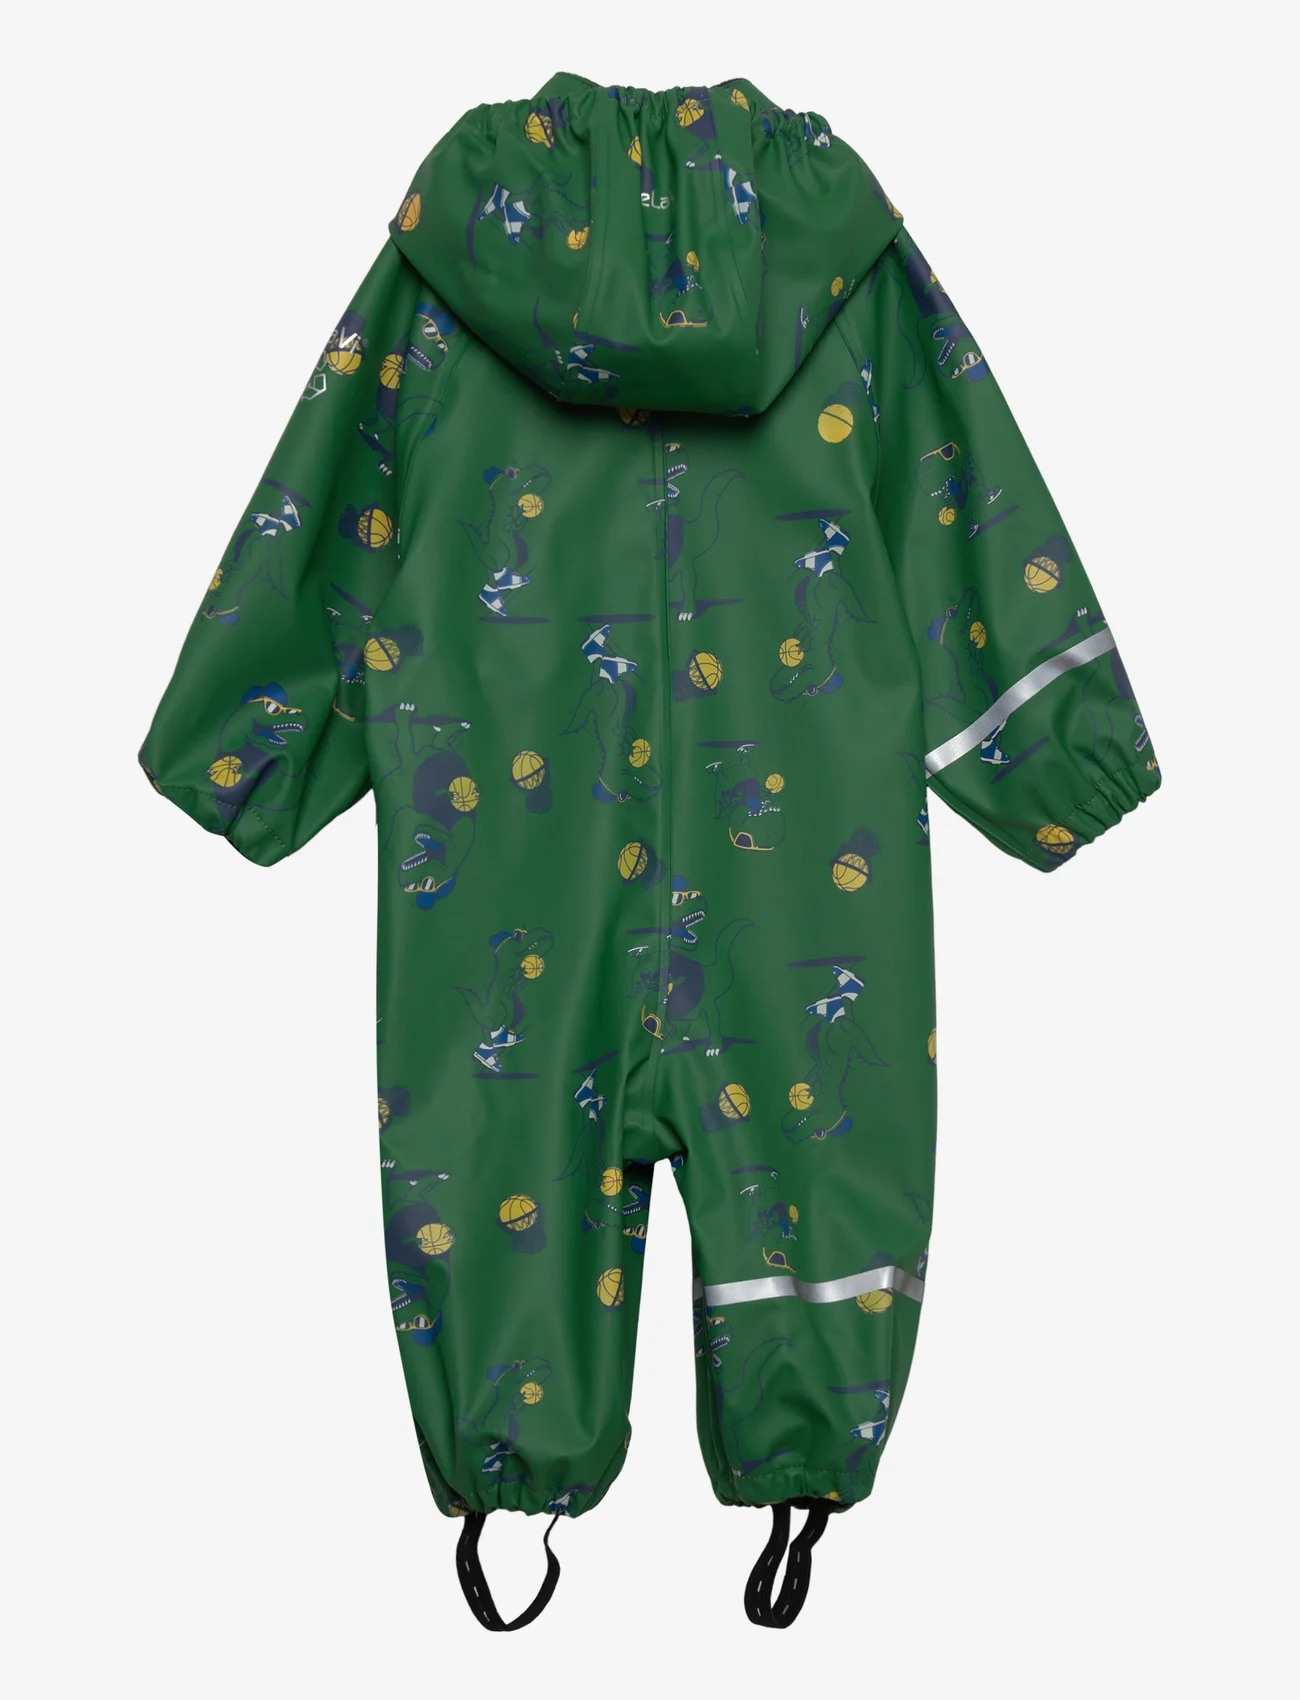 CeLaVi - Rainwear Suit - AOP - kombinezony przeciwdeszczowe - foliage green - 1